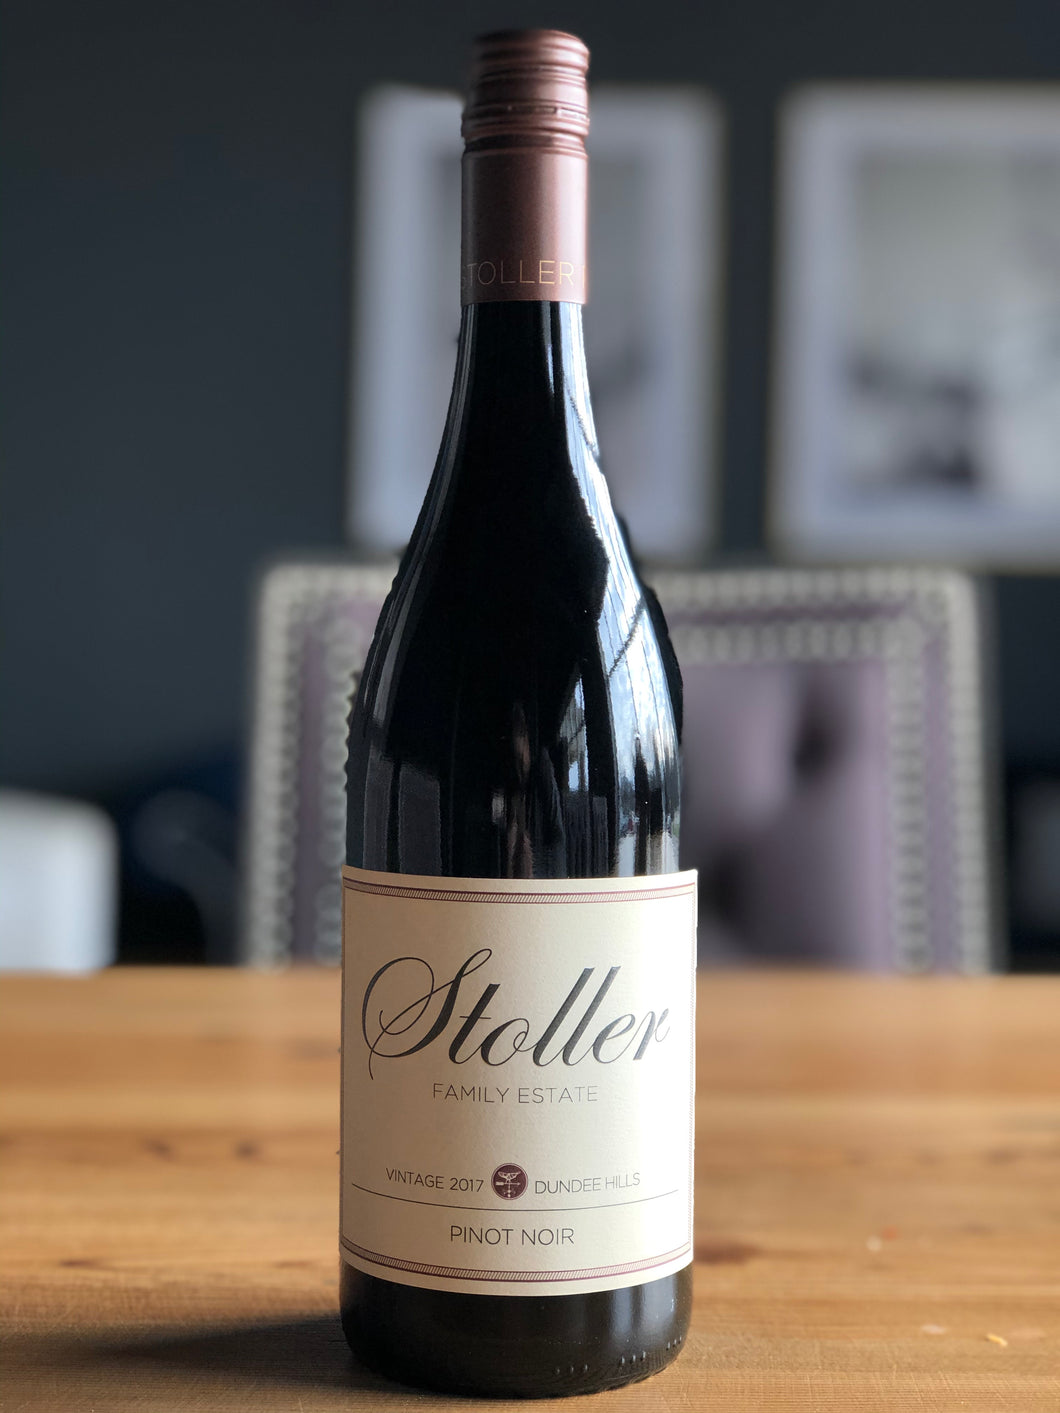 Stoller Dundee Hills Pinot Noir, 2017